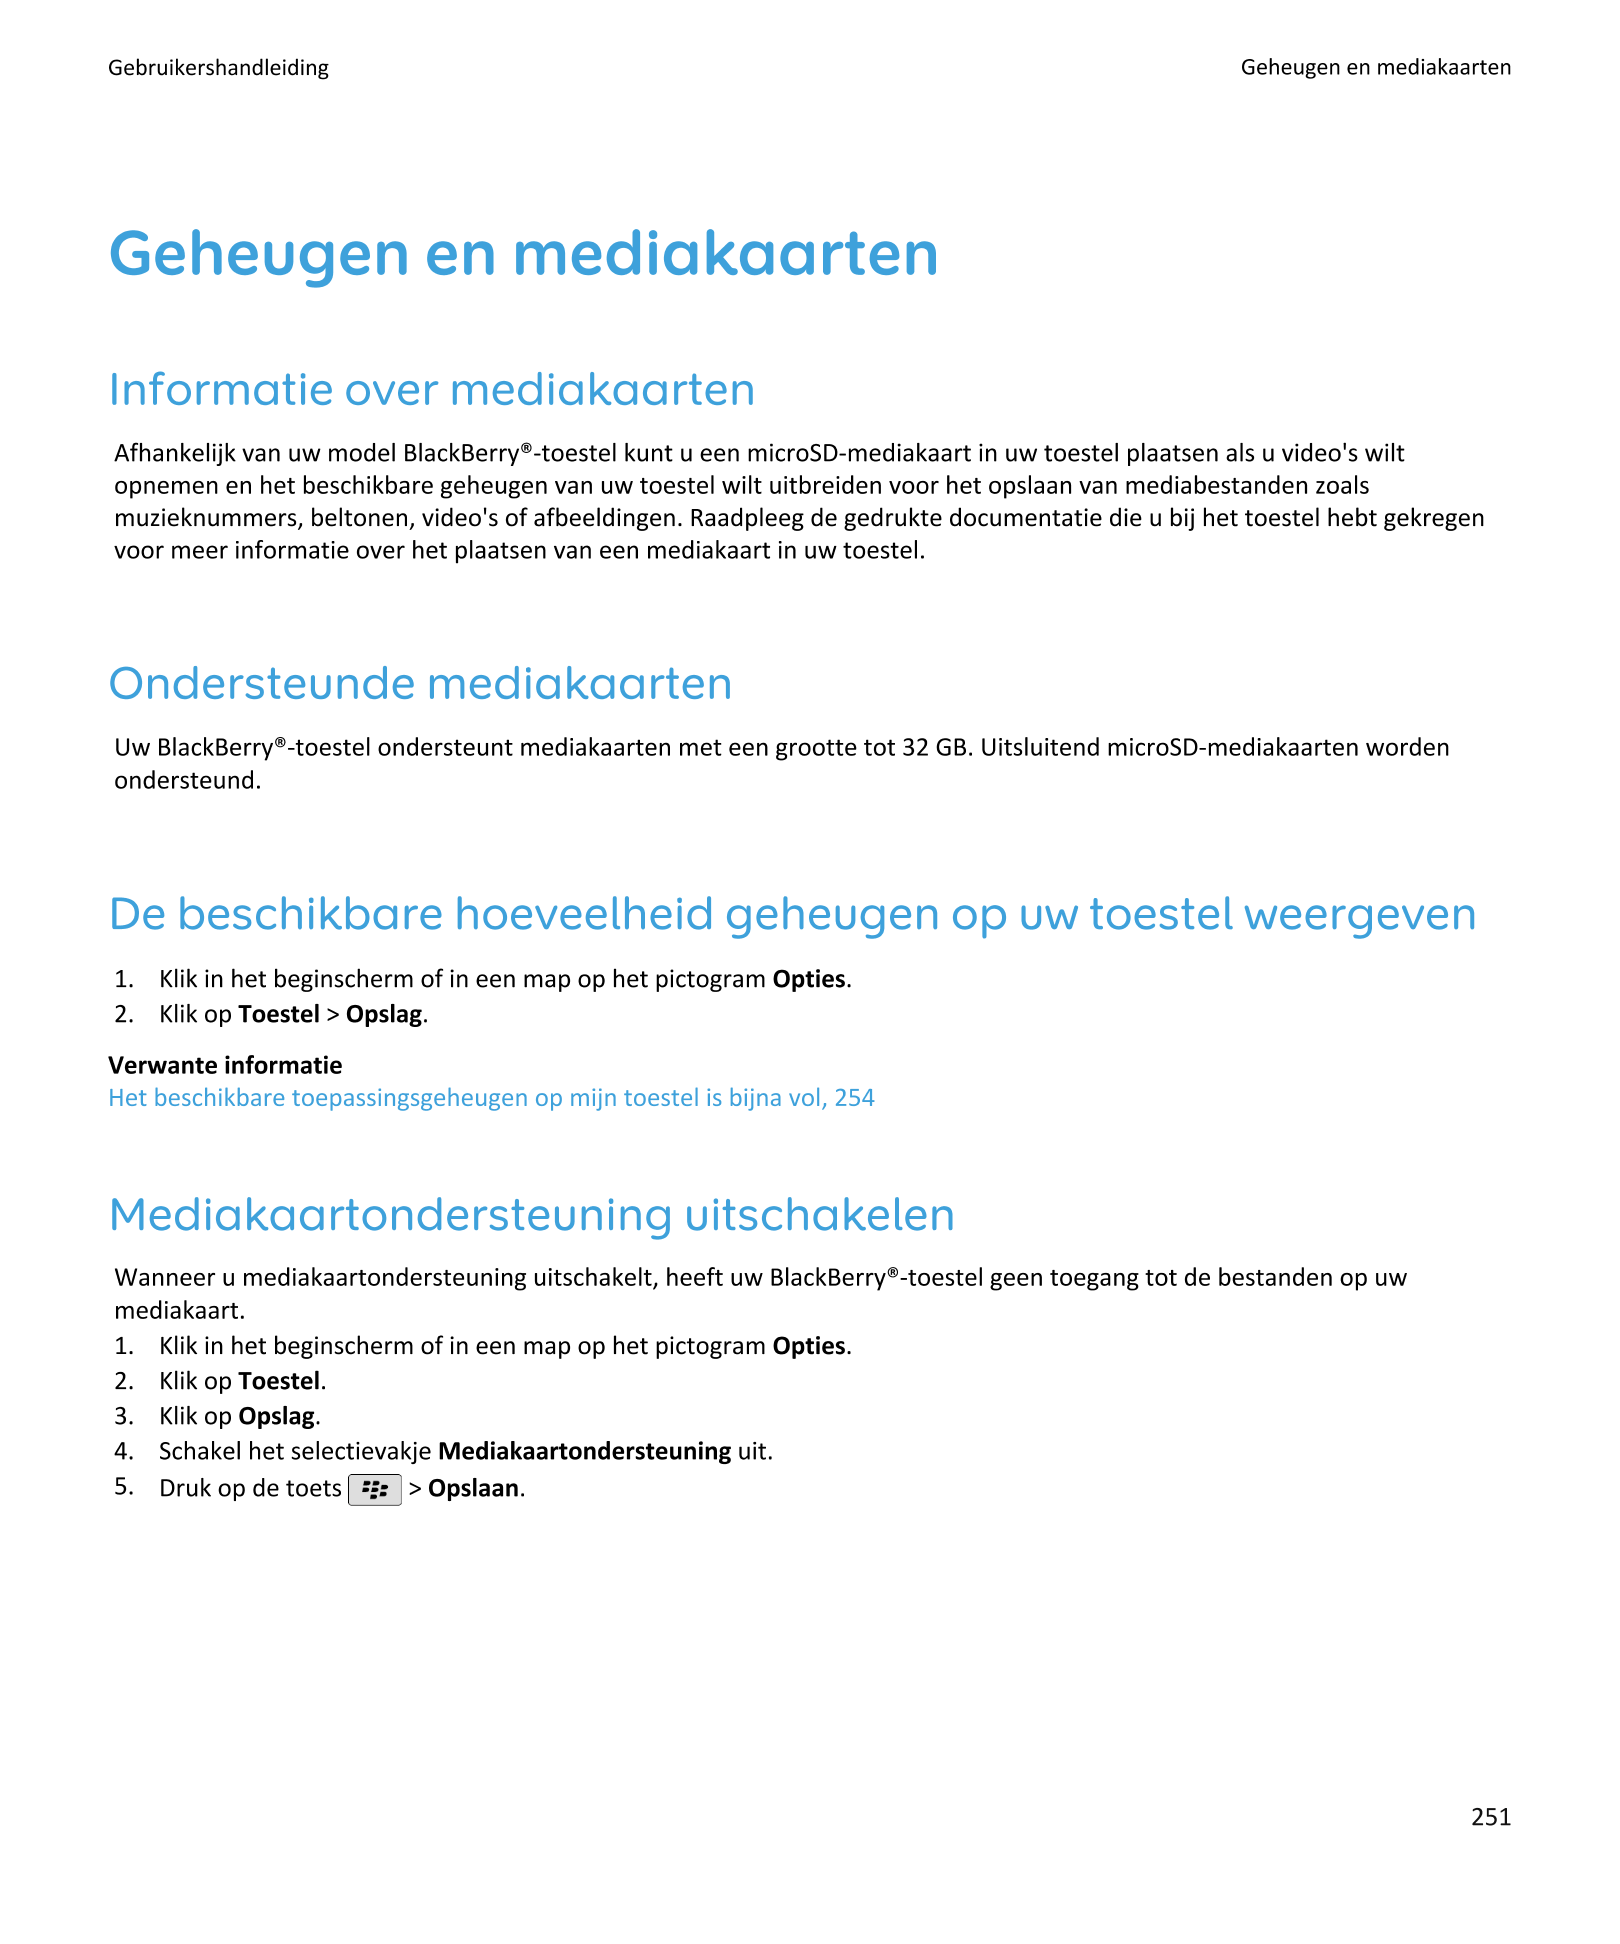 Gebruikershandleiding Geheugen en mediakaarten
Geheugen en mediakaarten
Informatie over mediakaarten
Afhankelijk van uw model Bl